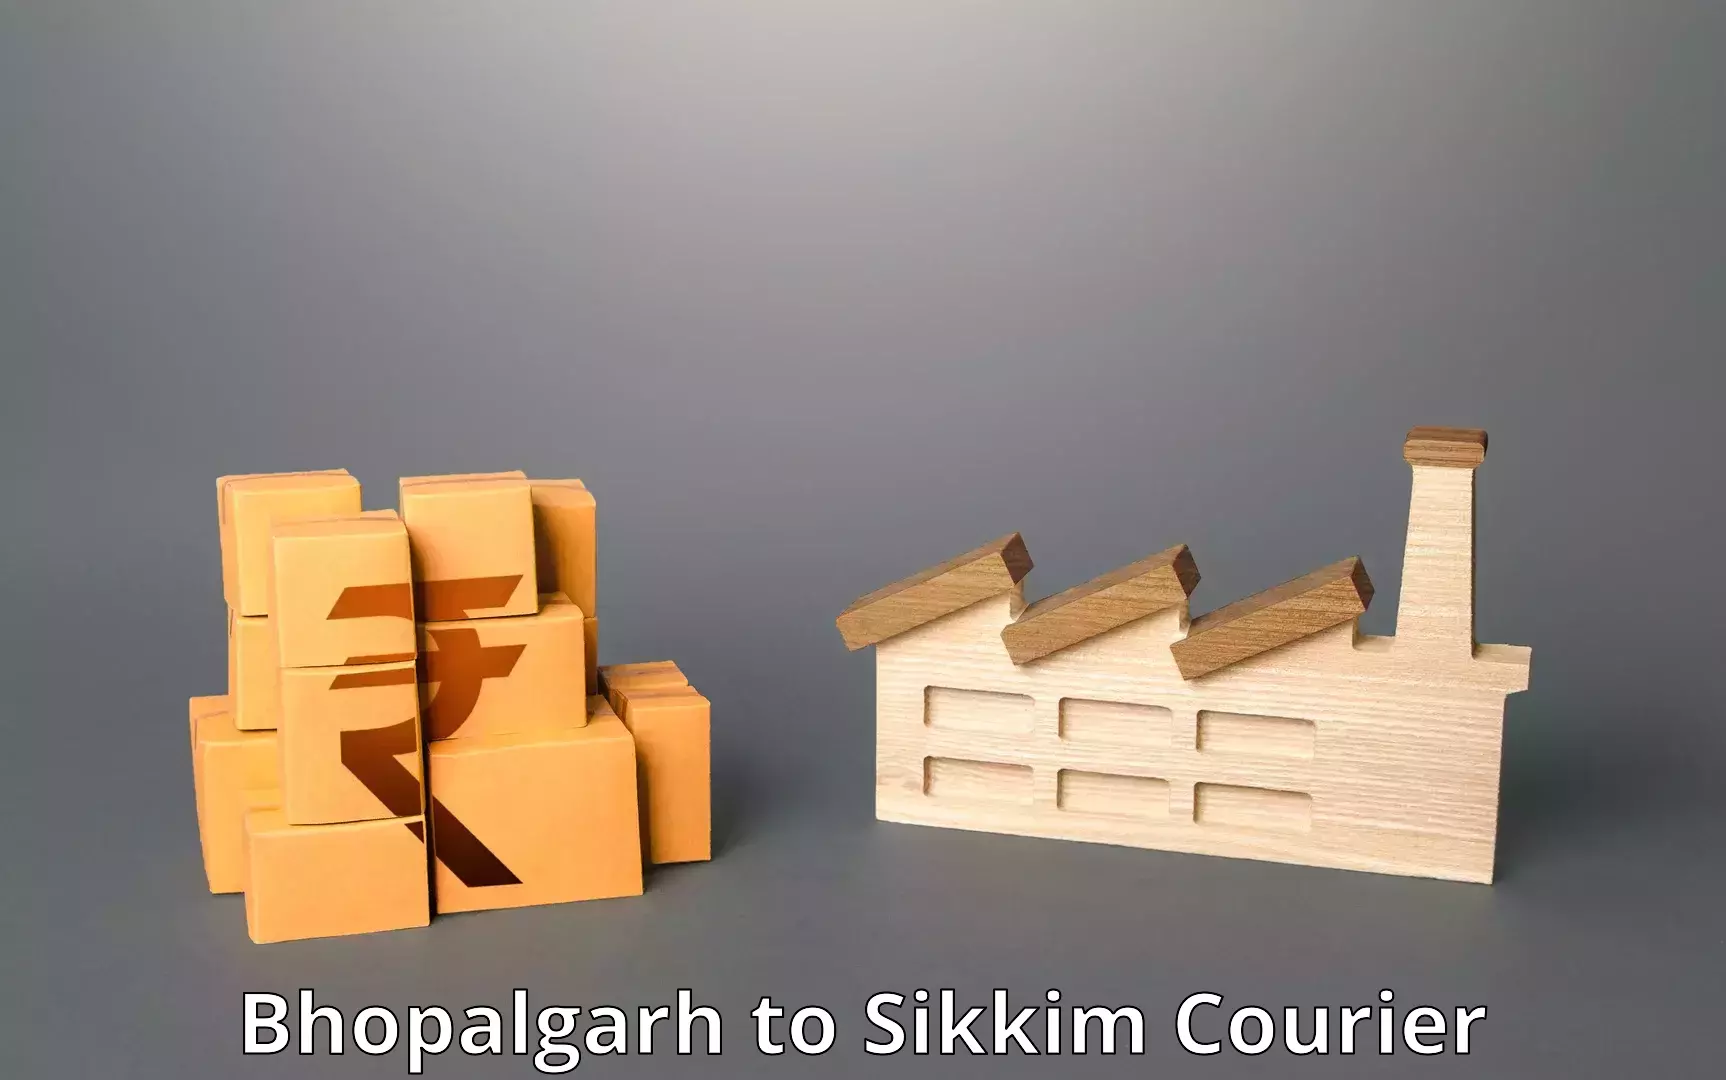 Flexible shipping options Bhopalgarh to Rangpo